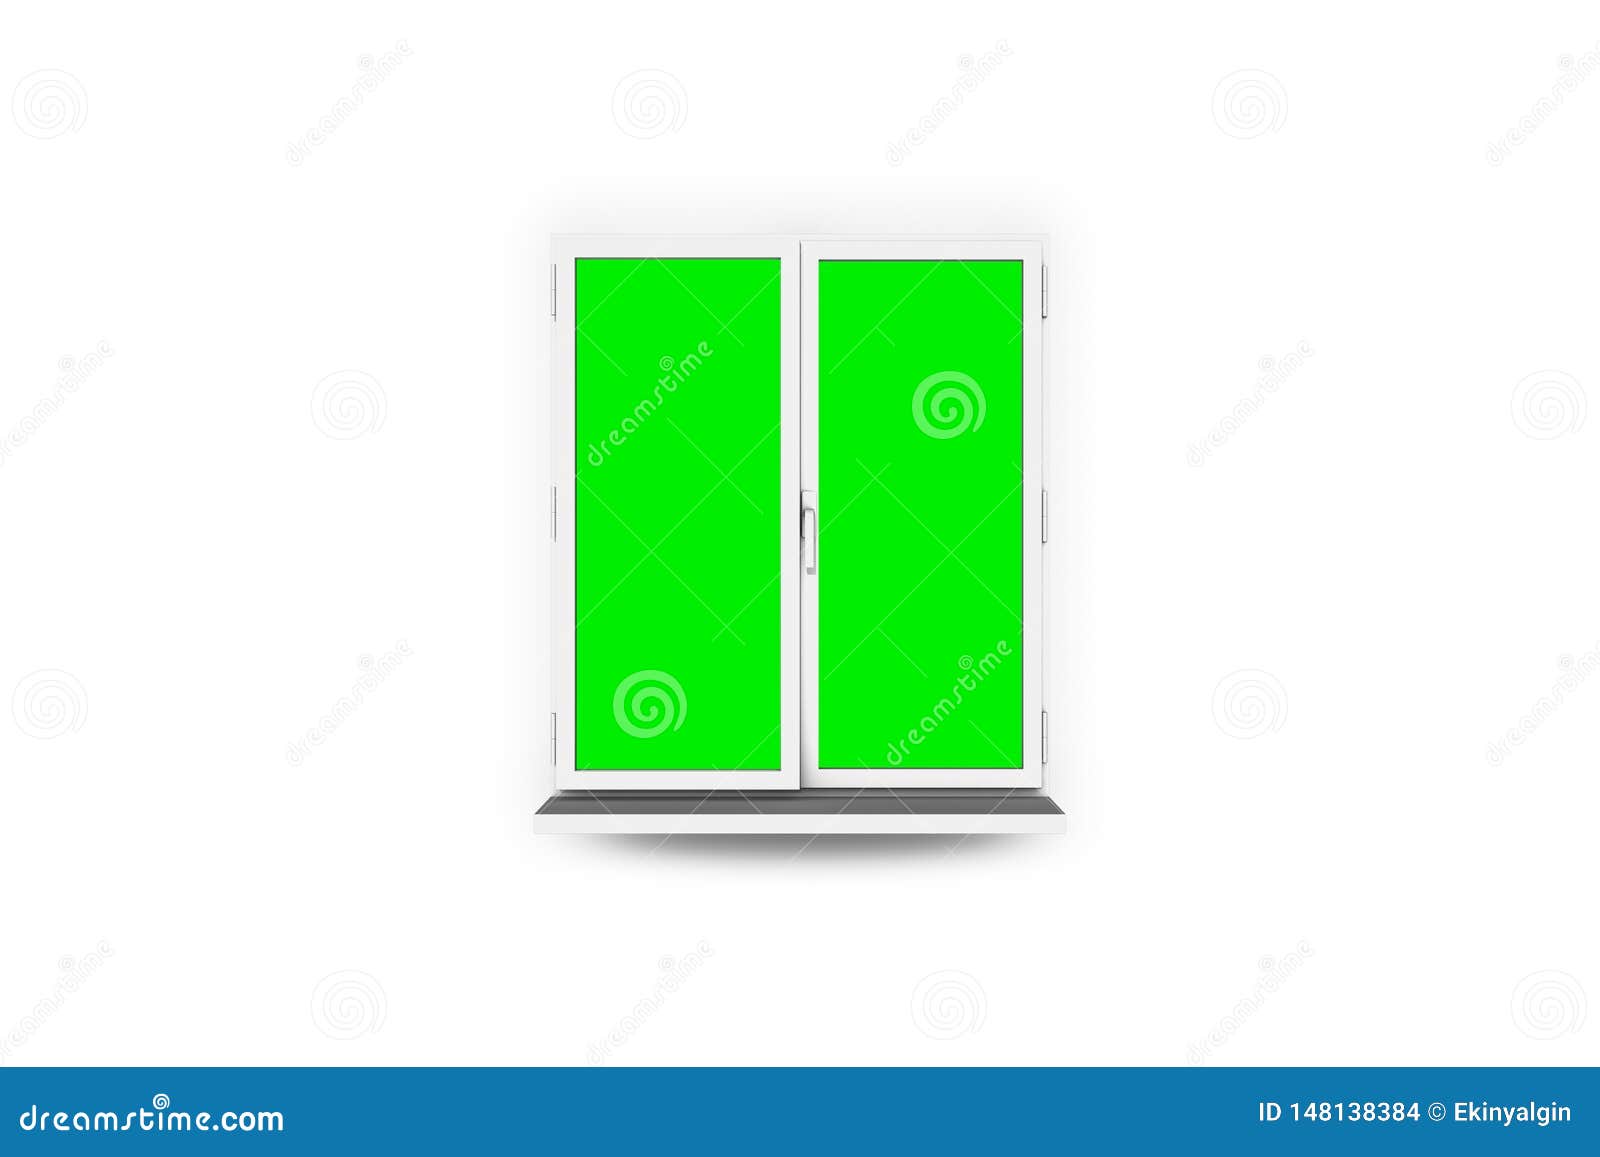 Kết hợp thiết kế cửa sổ xanh lá cây nét độc đáo với khung cảnh đẹp tự nhiên là một ý tưởng tuyệt vời để tạo ra những bức ảnh ấn tượng. Hãy khám phá những thiết kế cửa sổ xanh lá cây đặc biệt để tạo ra những bức ảnh độc đáo và thu hút người xem.